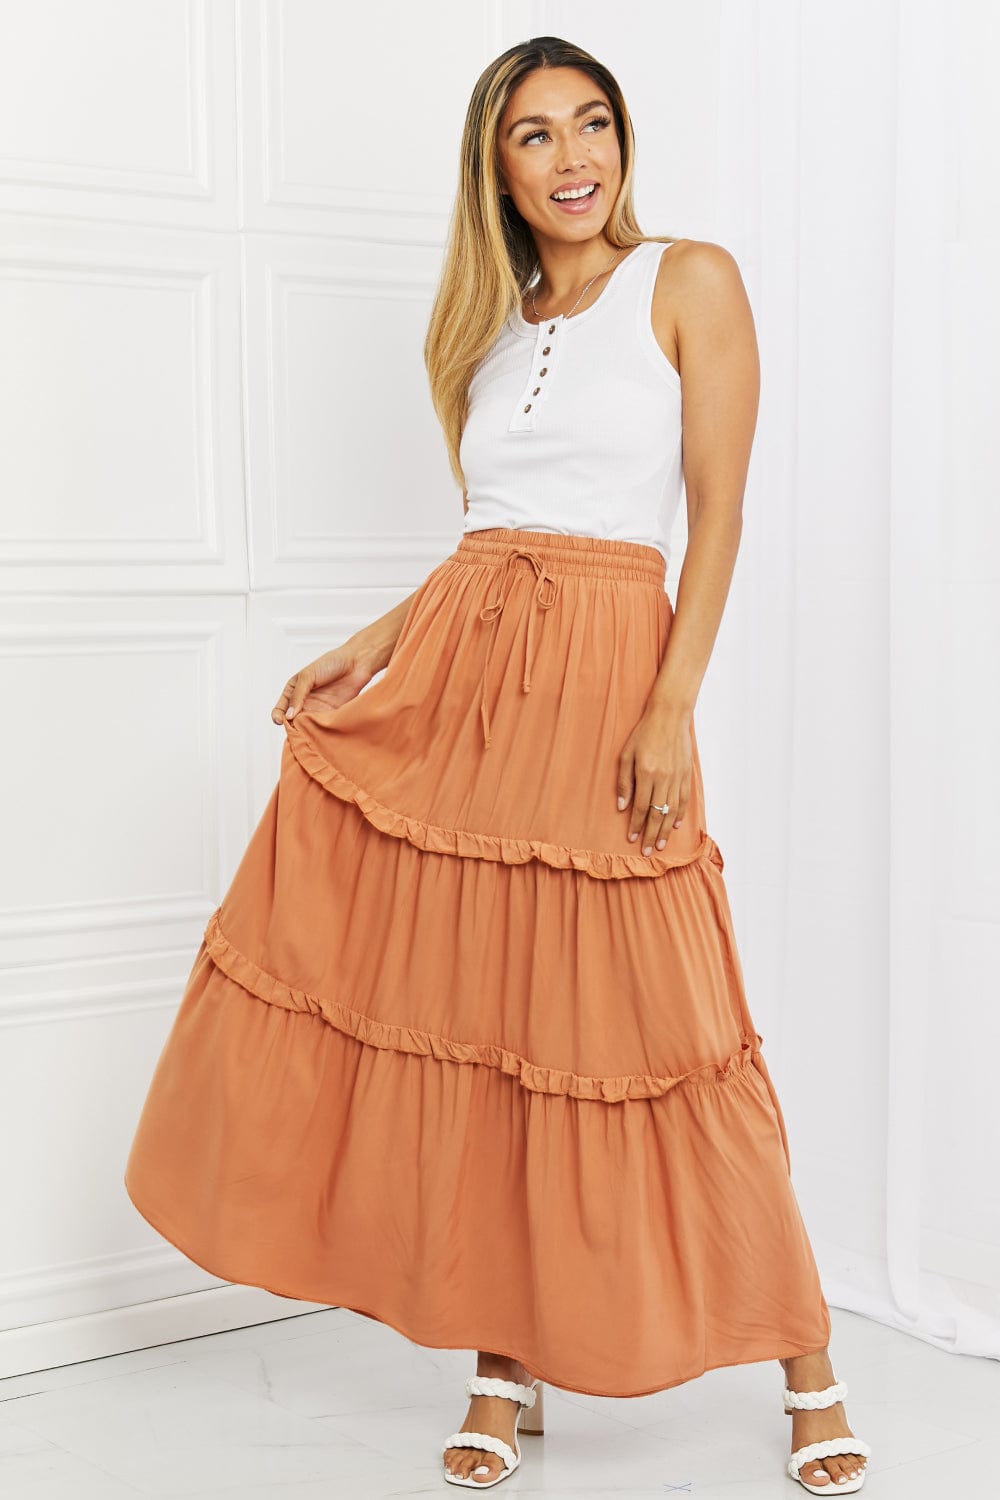 Summer Days Full Size Ruffled Maxi Skirt in Butter Orange - Body By J'ne